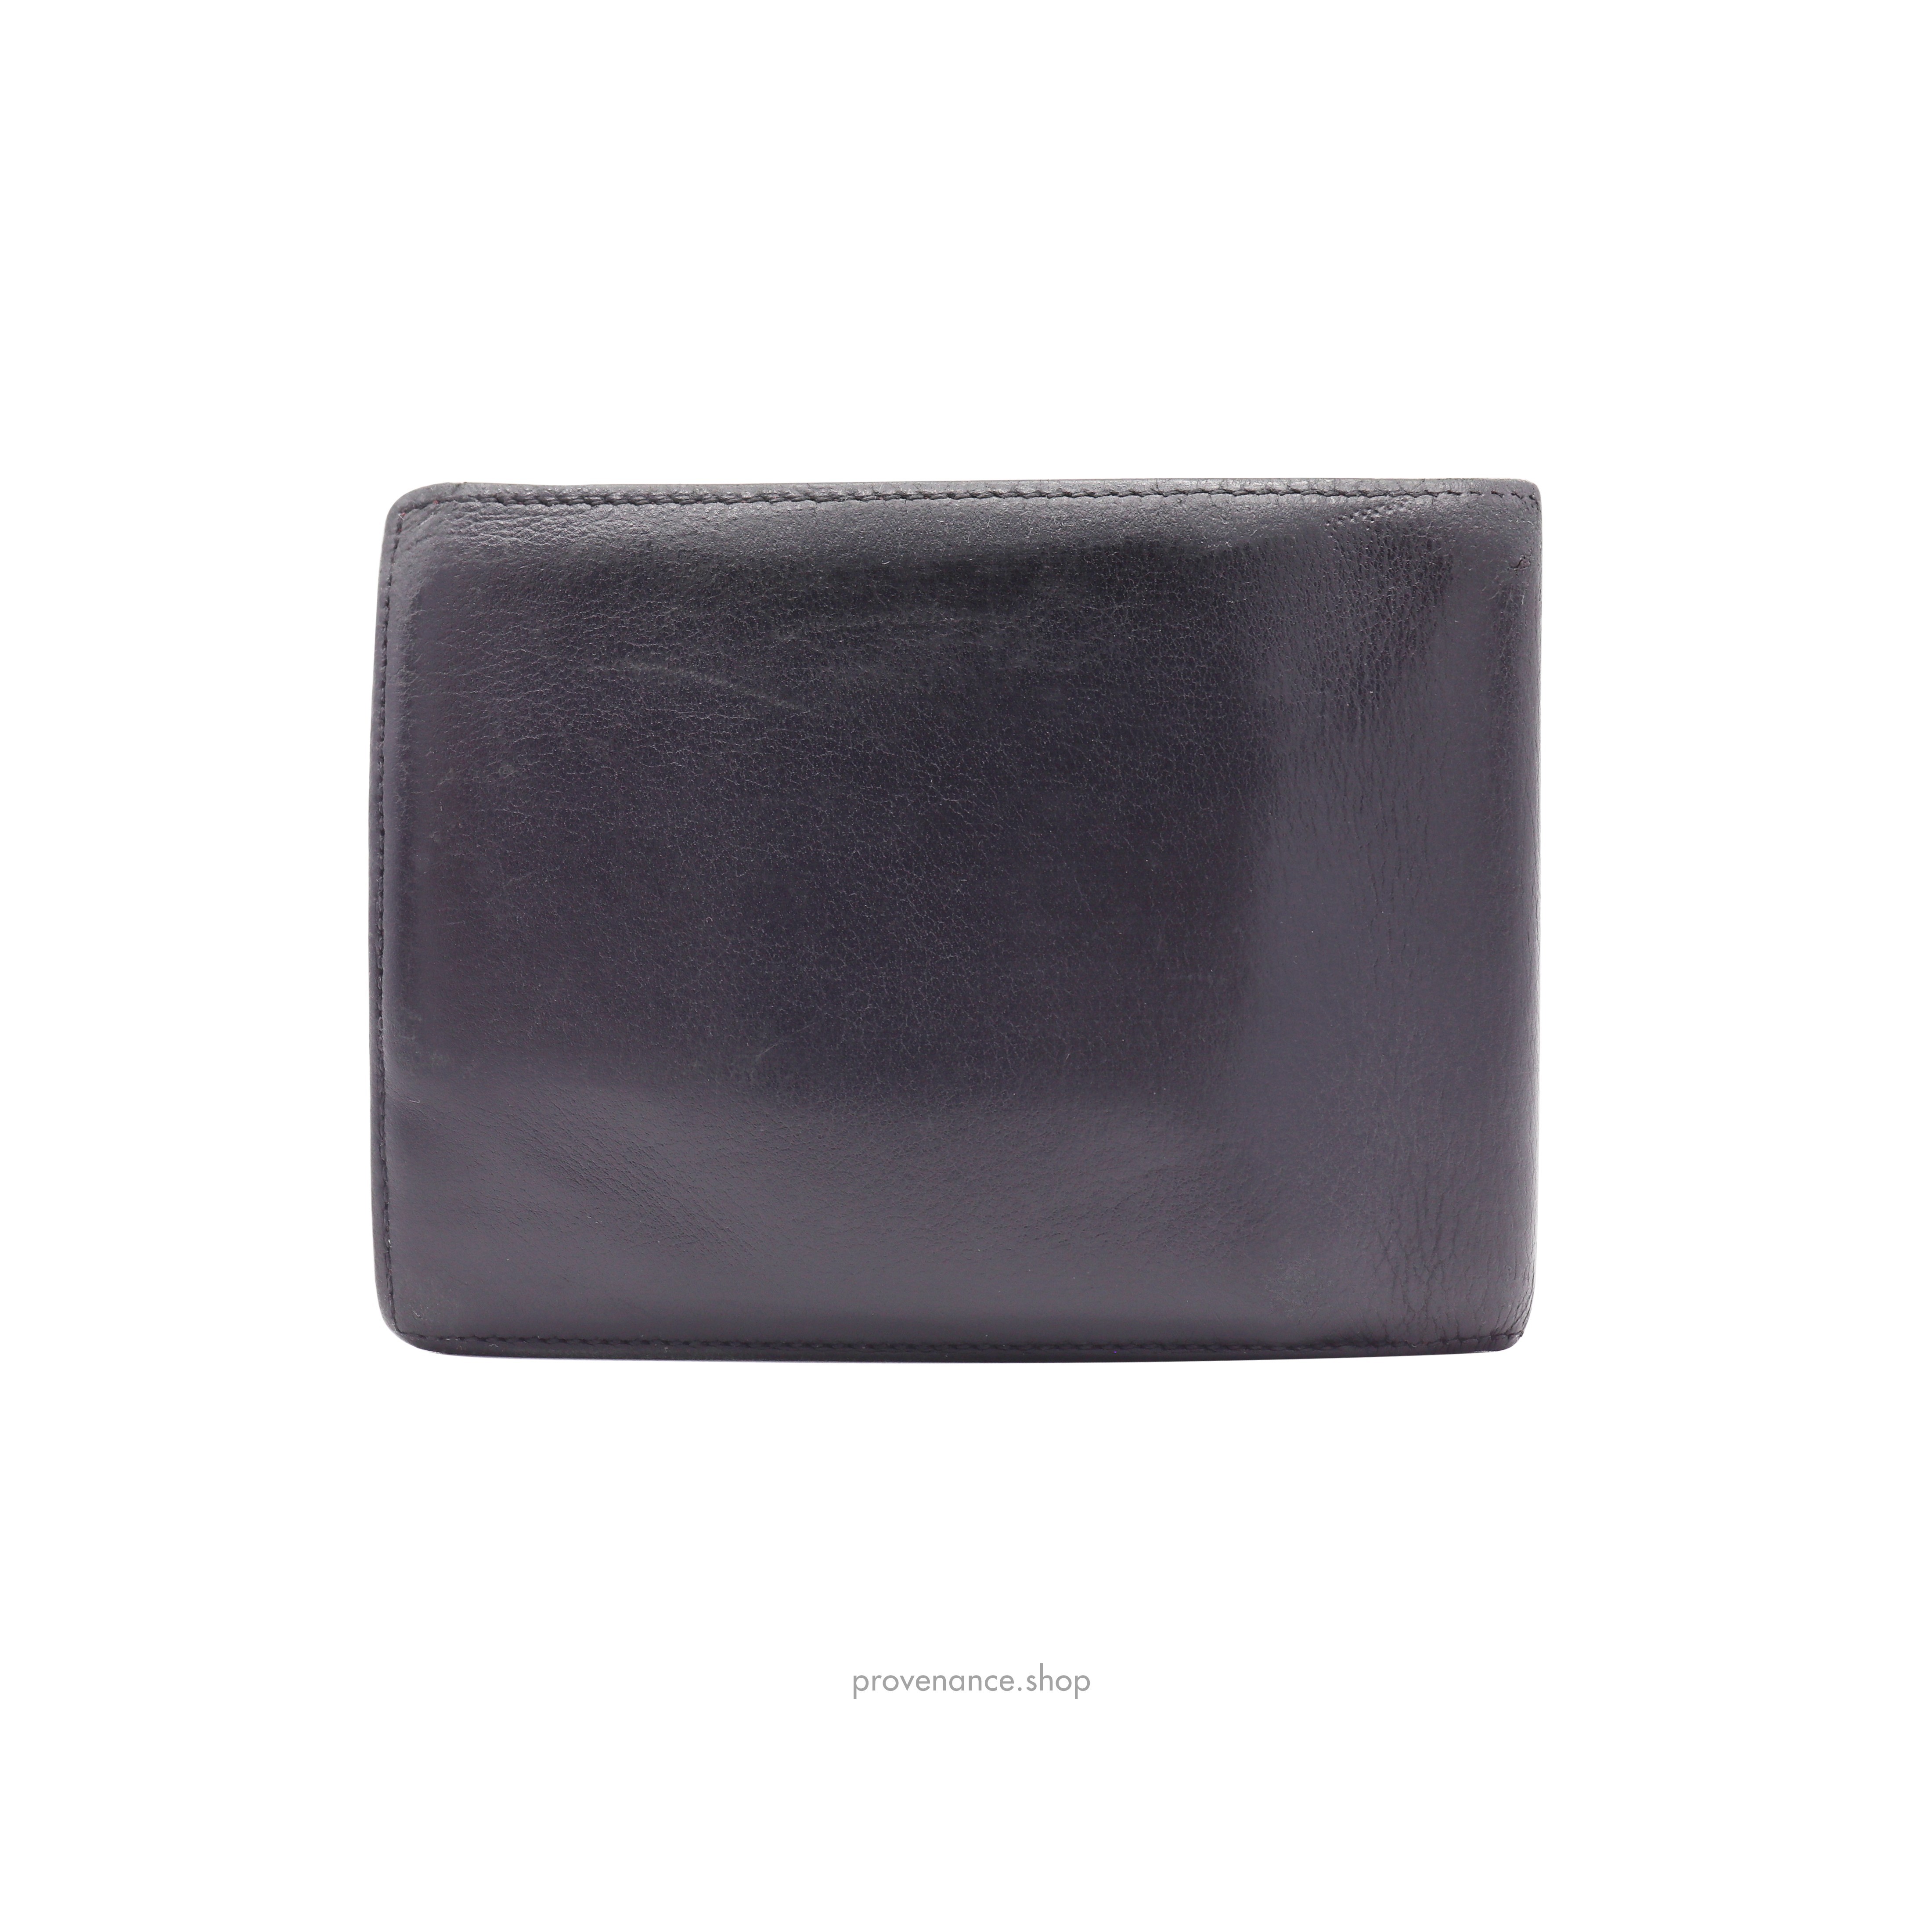 Cartier Bifold Wallet - Black Calfskin Leather - 2